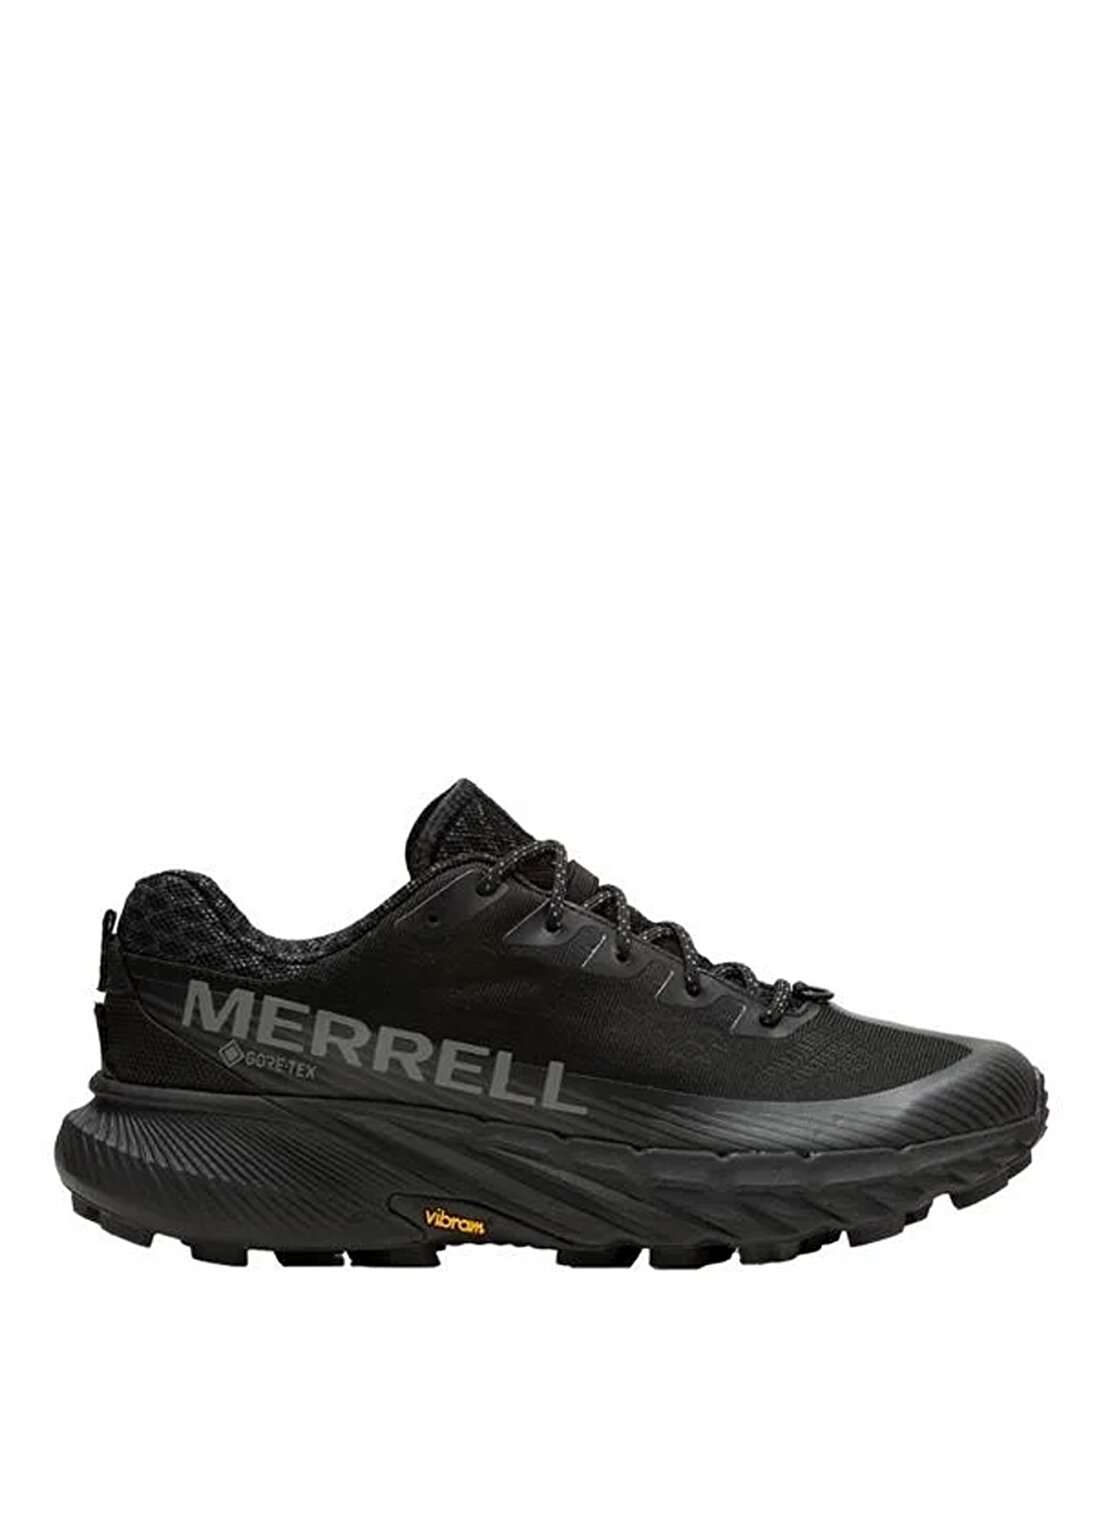 Merrell Siyah Kadın Gore-Tex Koşu Ayakkabısı J067790agility Peak 5 Gtx